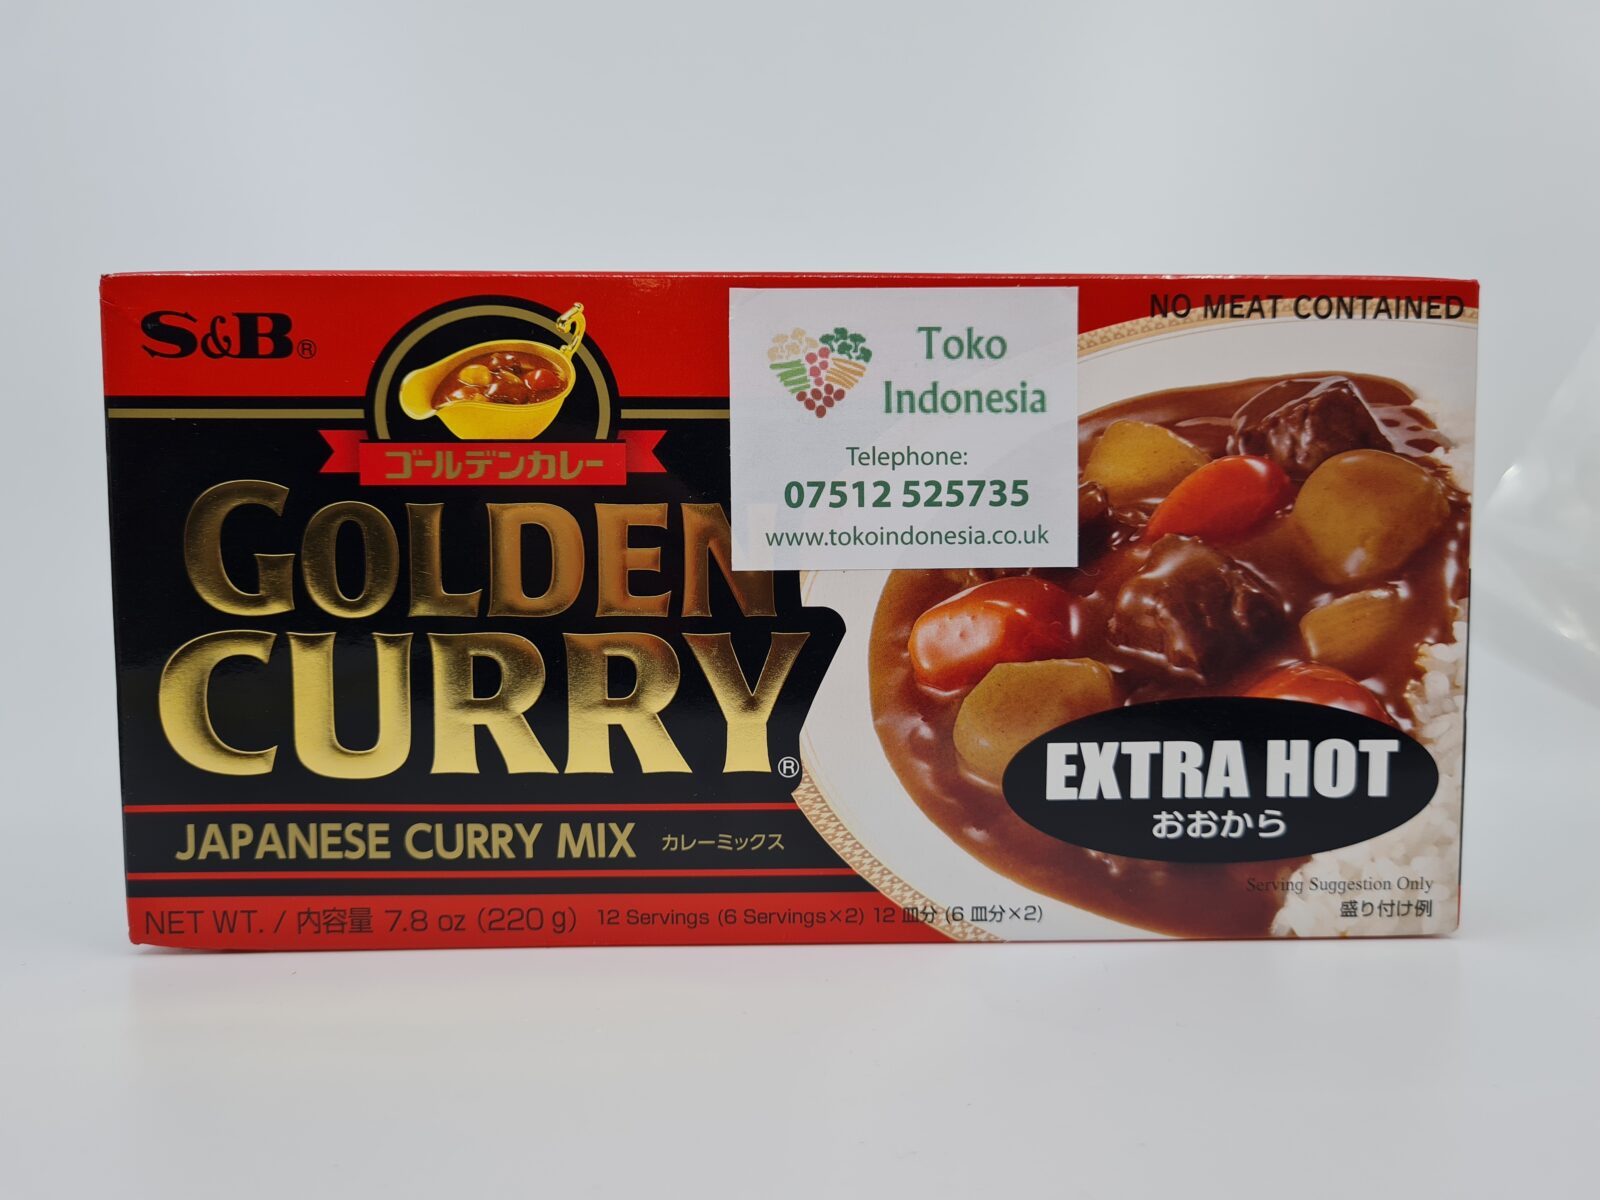 sb-golden-curry-en-cube-japonais-hot-220g